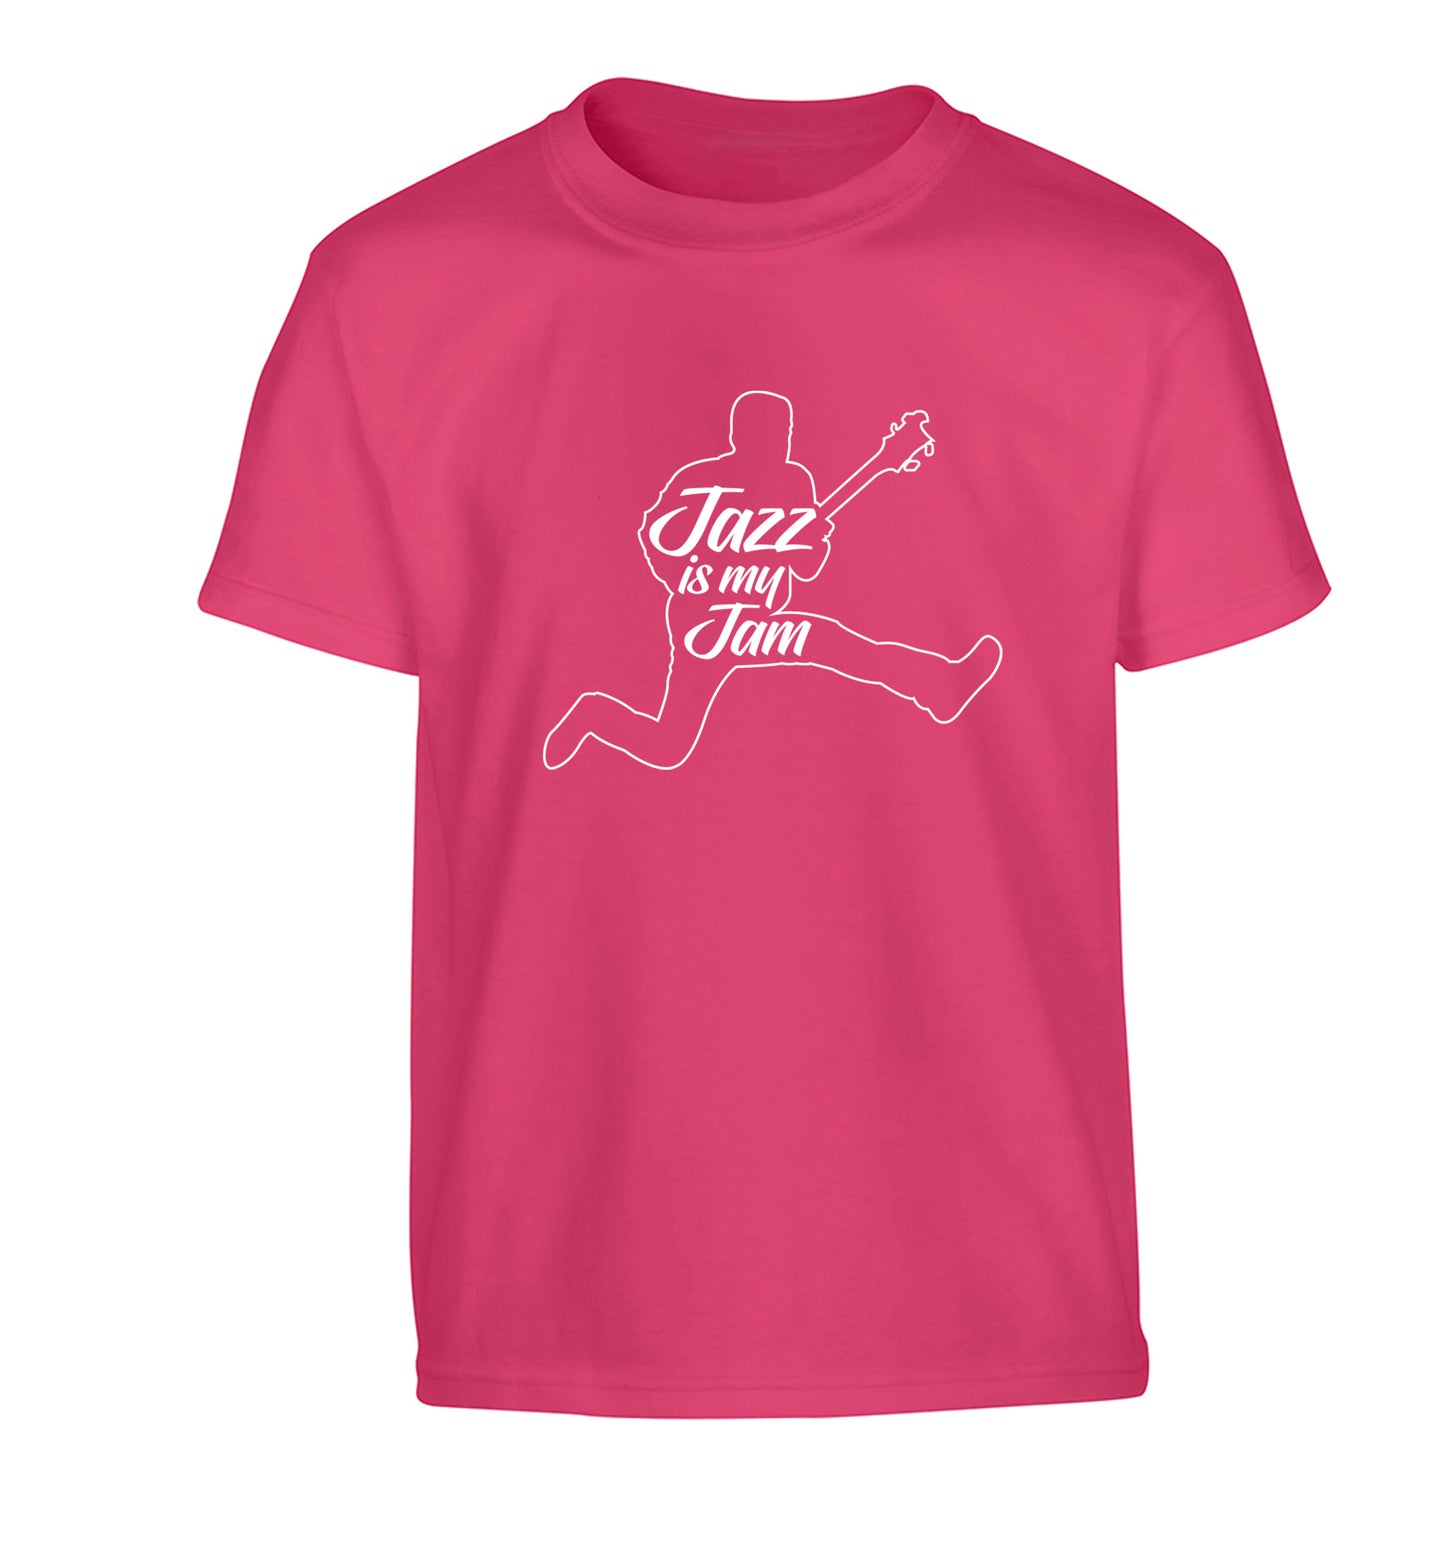 Jazz is my jam Children's pink Tshirt 12-13 Years